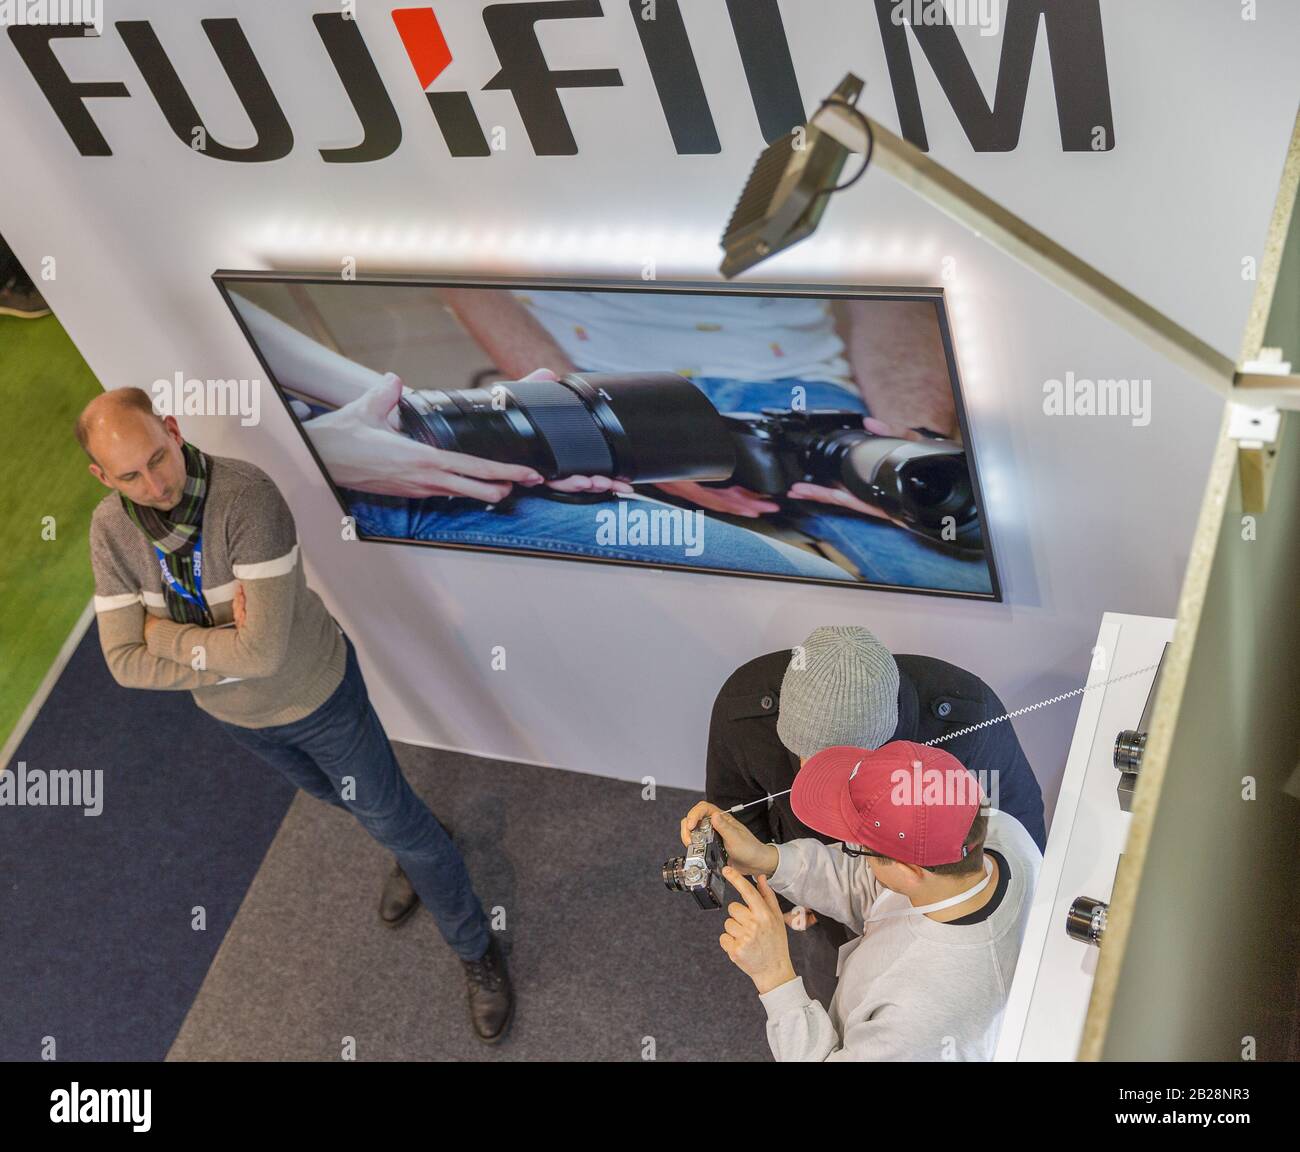 Kiev, UCRAINA - 13 APRILE 2019: Persone che testano fotocamere fotografiche professionali presso lo stand della FujiFilm durante la CEE 2019, il più grande consumatore eletto Foto Stock